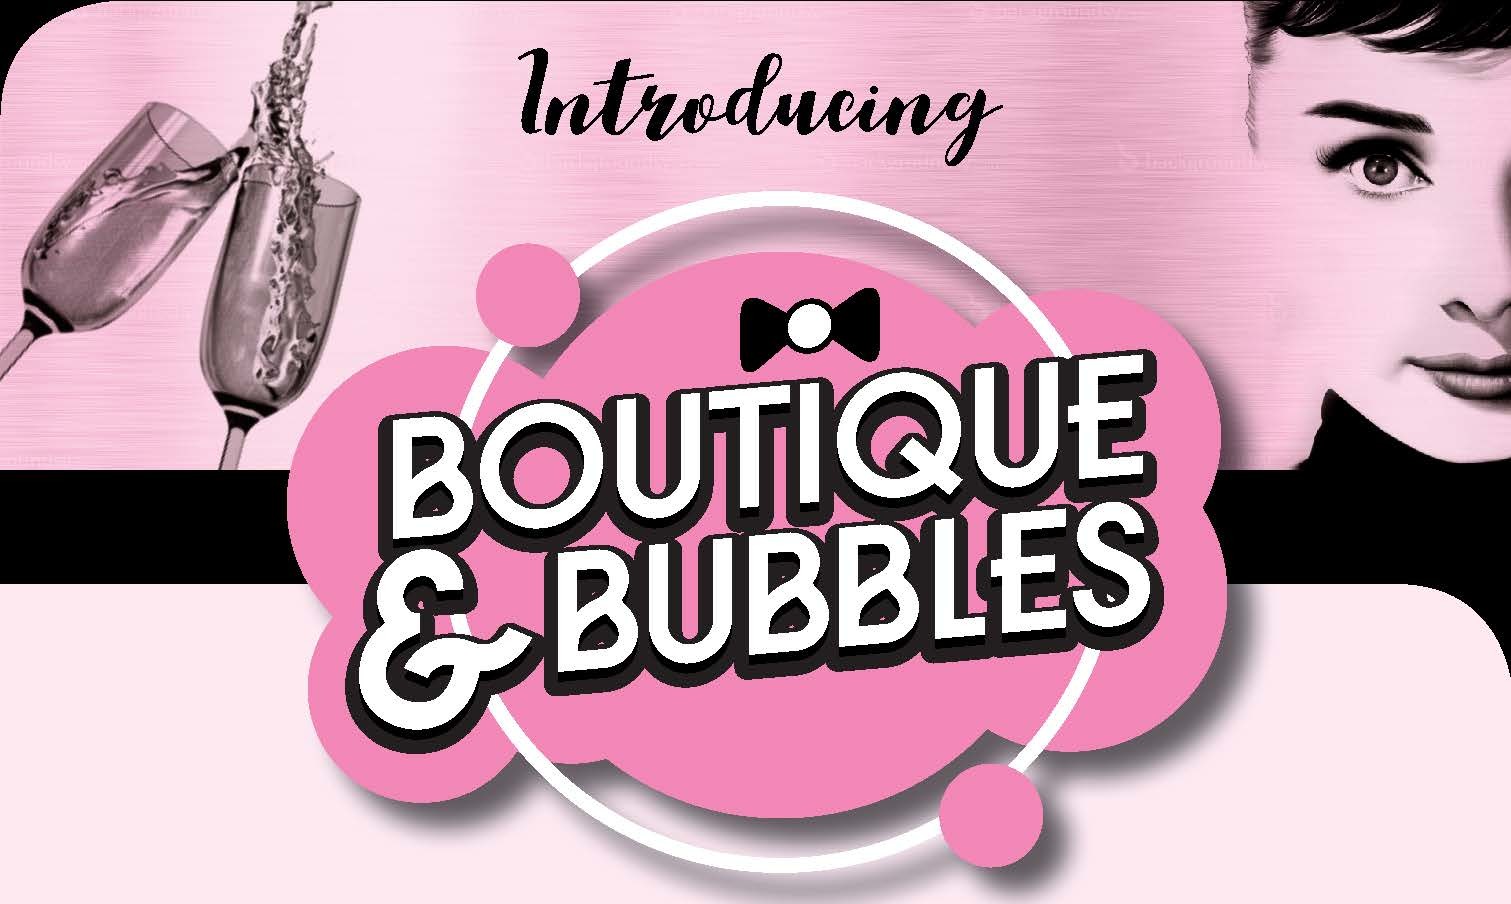 Boutique and Bubbles Advert